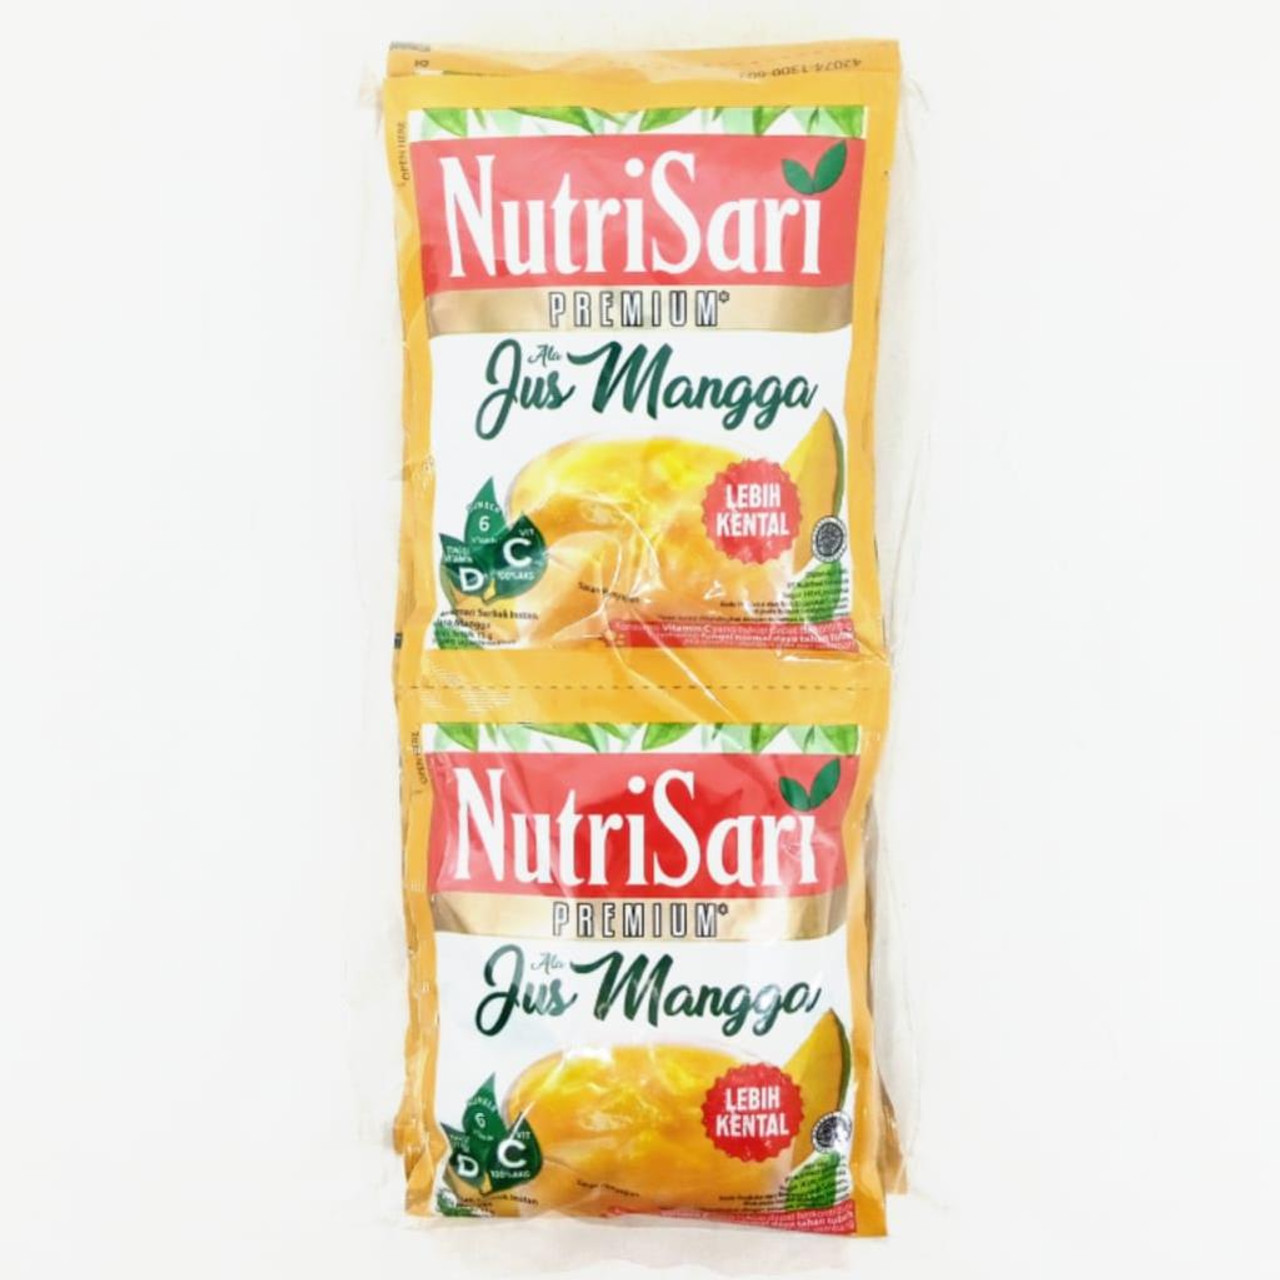 NutriSari Premium Jus Mangga, 10ct